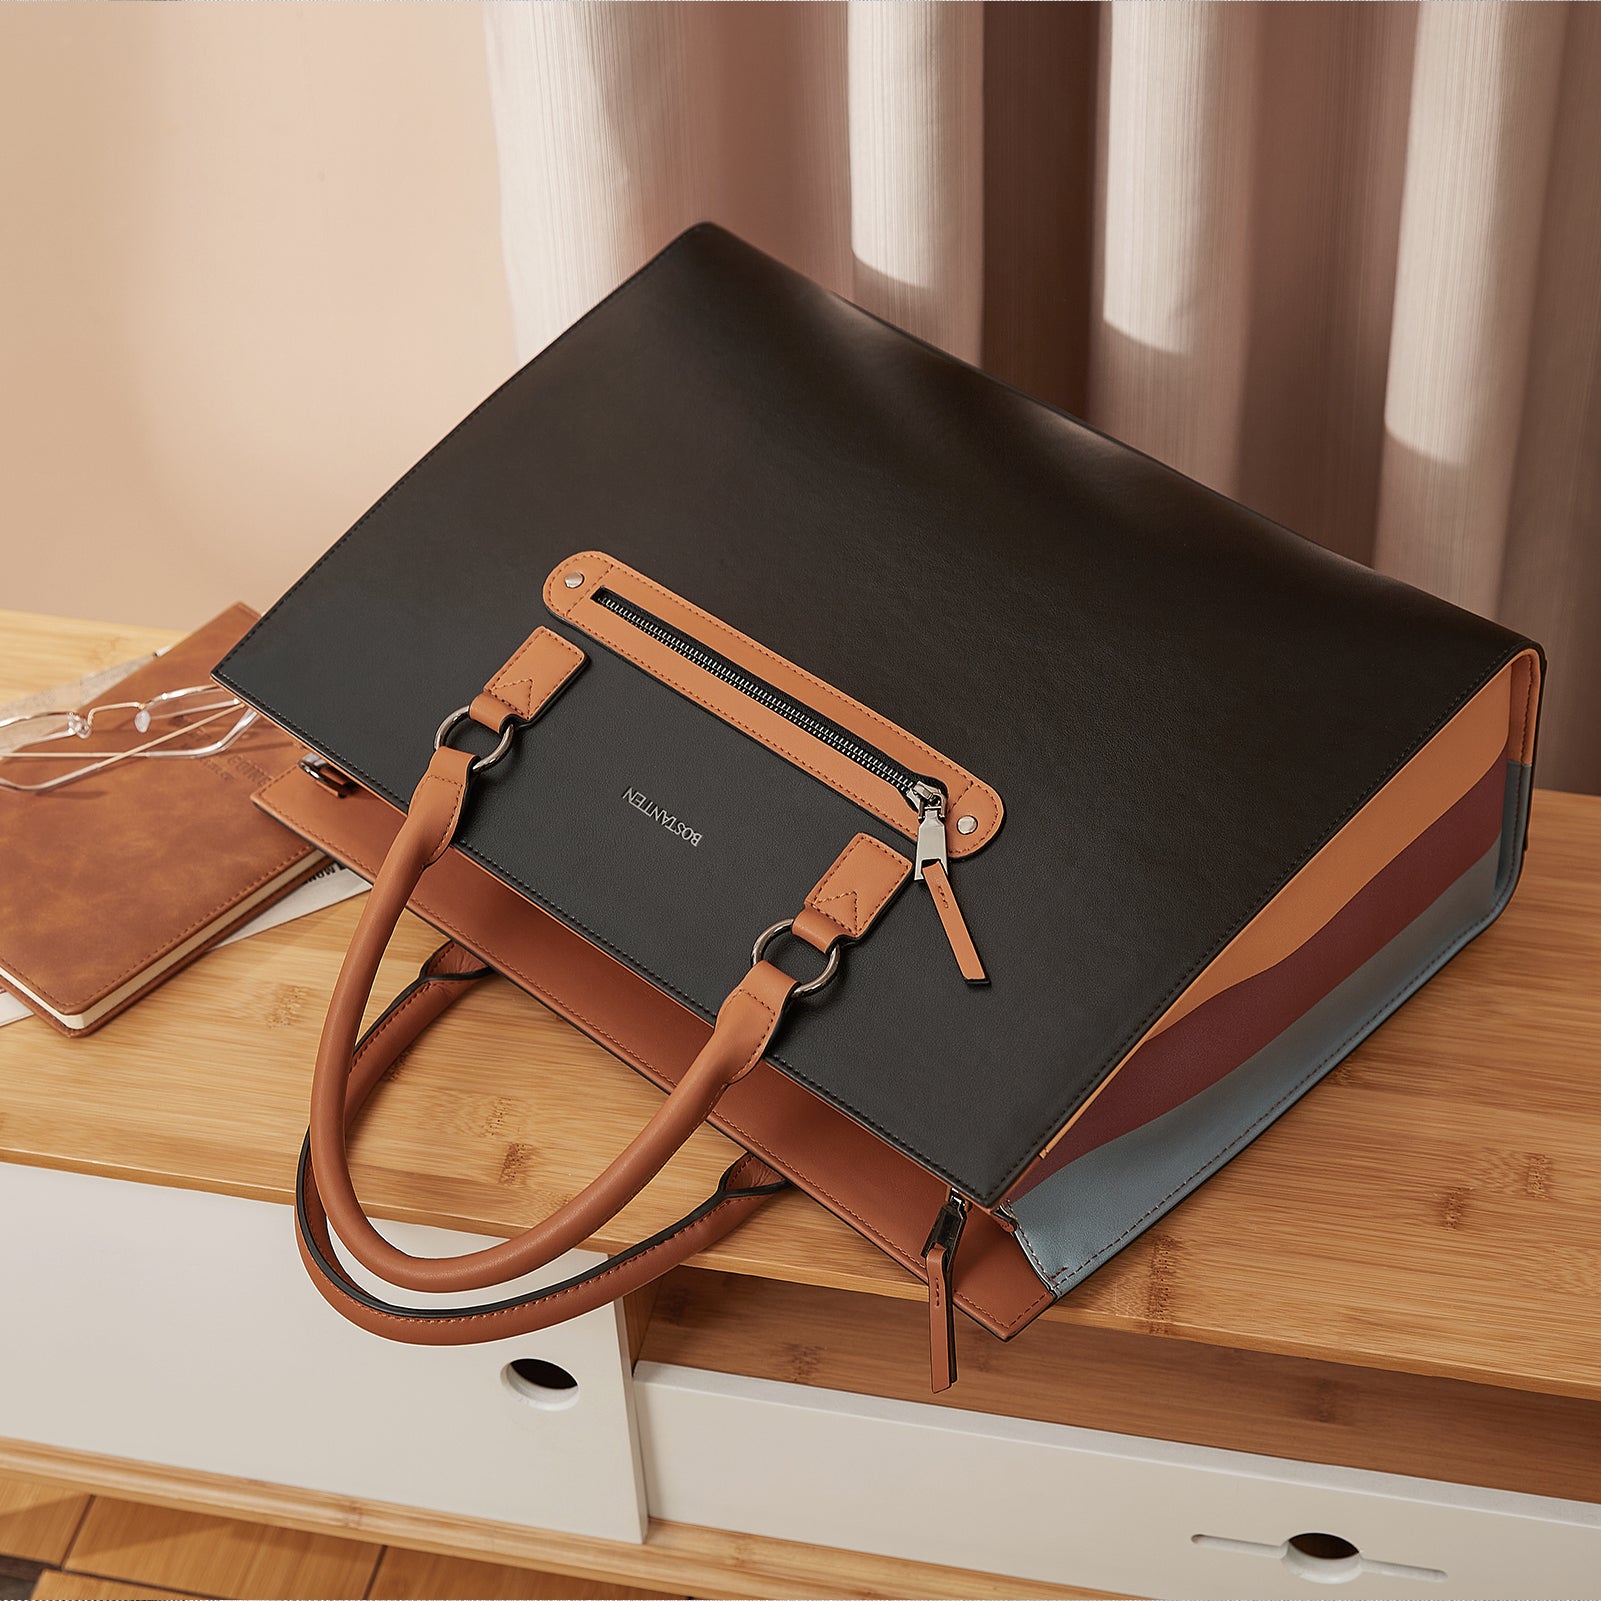 BOSTANTEN Leather Laptop Briefcase for Women Shoulder Bag 15.6